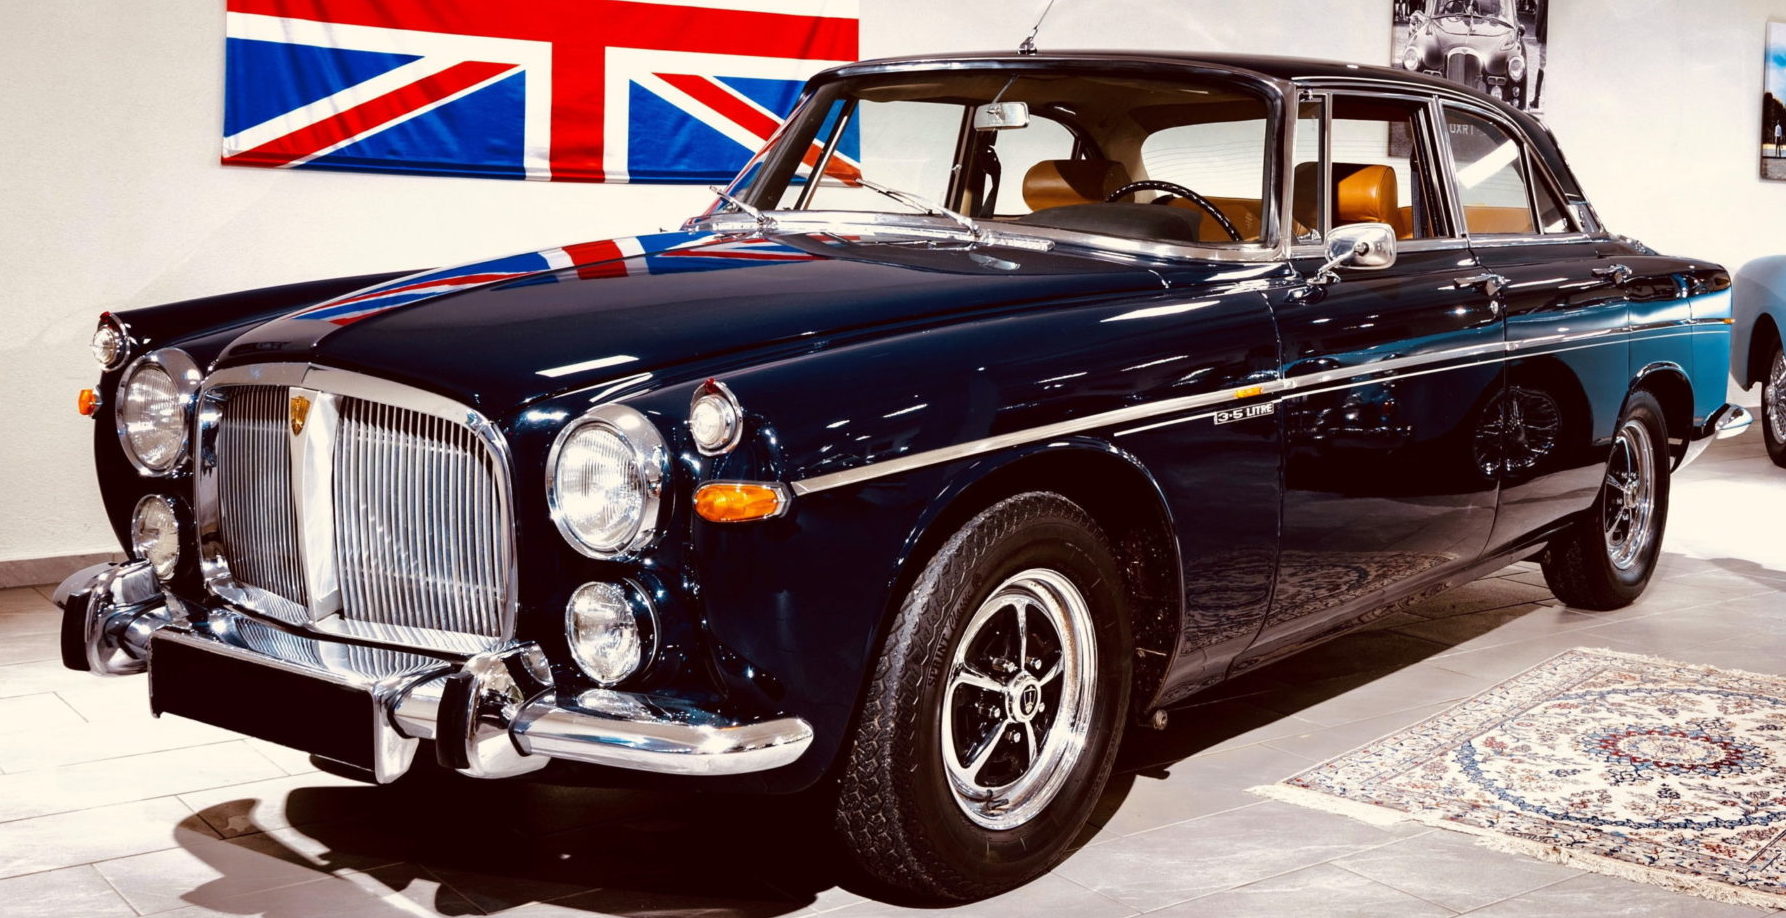 A Balaton-felvidék festõi környezetében, Dörgicsén található Kaáli Autó-Motor Múzeum országos és nemzetközi hírnevét már eddig is legendás ritka autó gyûjteményének köszönhette. A most érkezett világhírû gépkocsik kiállításával egy olyan szintet léptek, melyek a legigényesebb autó rajongók képzeletét is felülmúlják. Angliában köztudott volt, hogy Erzsébet királynõ sokszor személyesen vezette a Rover P5b Coupe automatic gépkocsiját nem hivatalos ügyeinek intézésére. A 3.5 literes motorral rendelkezõ autó JGY 280 rendszámot kapott. Egy ilyen tipusú kocsit állítottak ki most Dörgicsén.